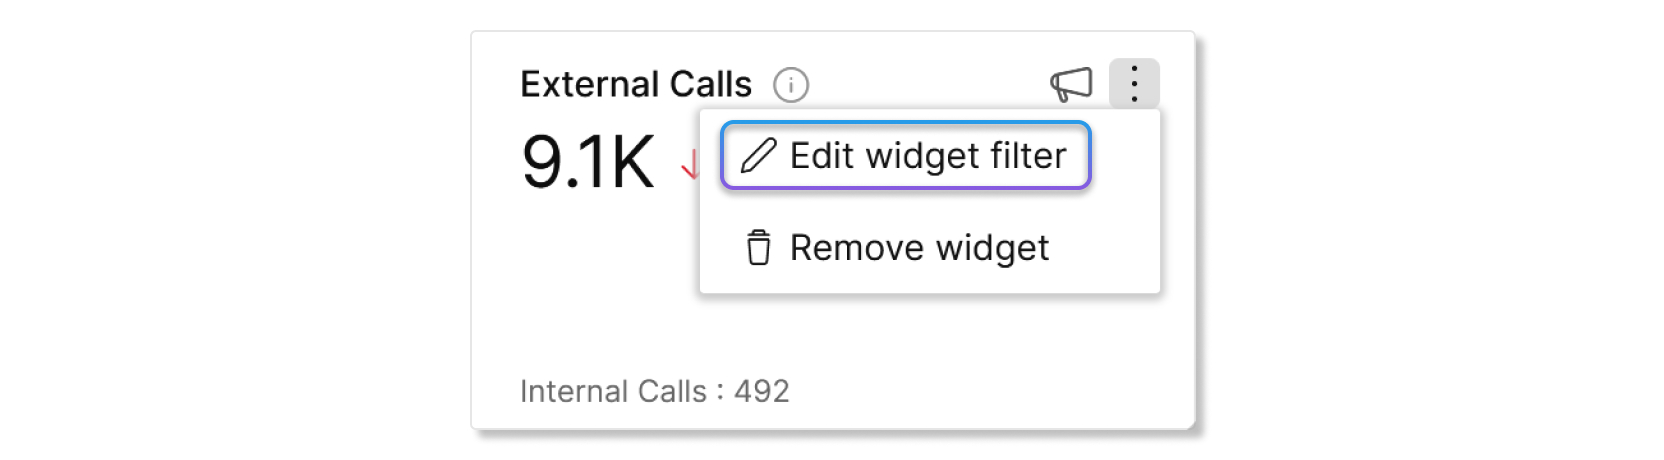 Editar el botón de filtro de widgets en un gráfico en Control Hub